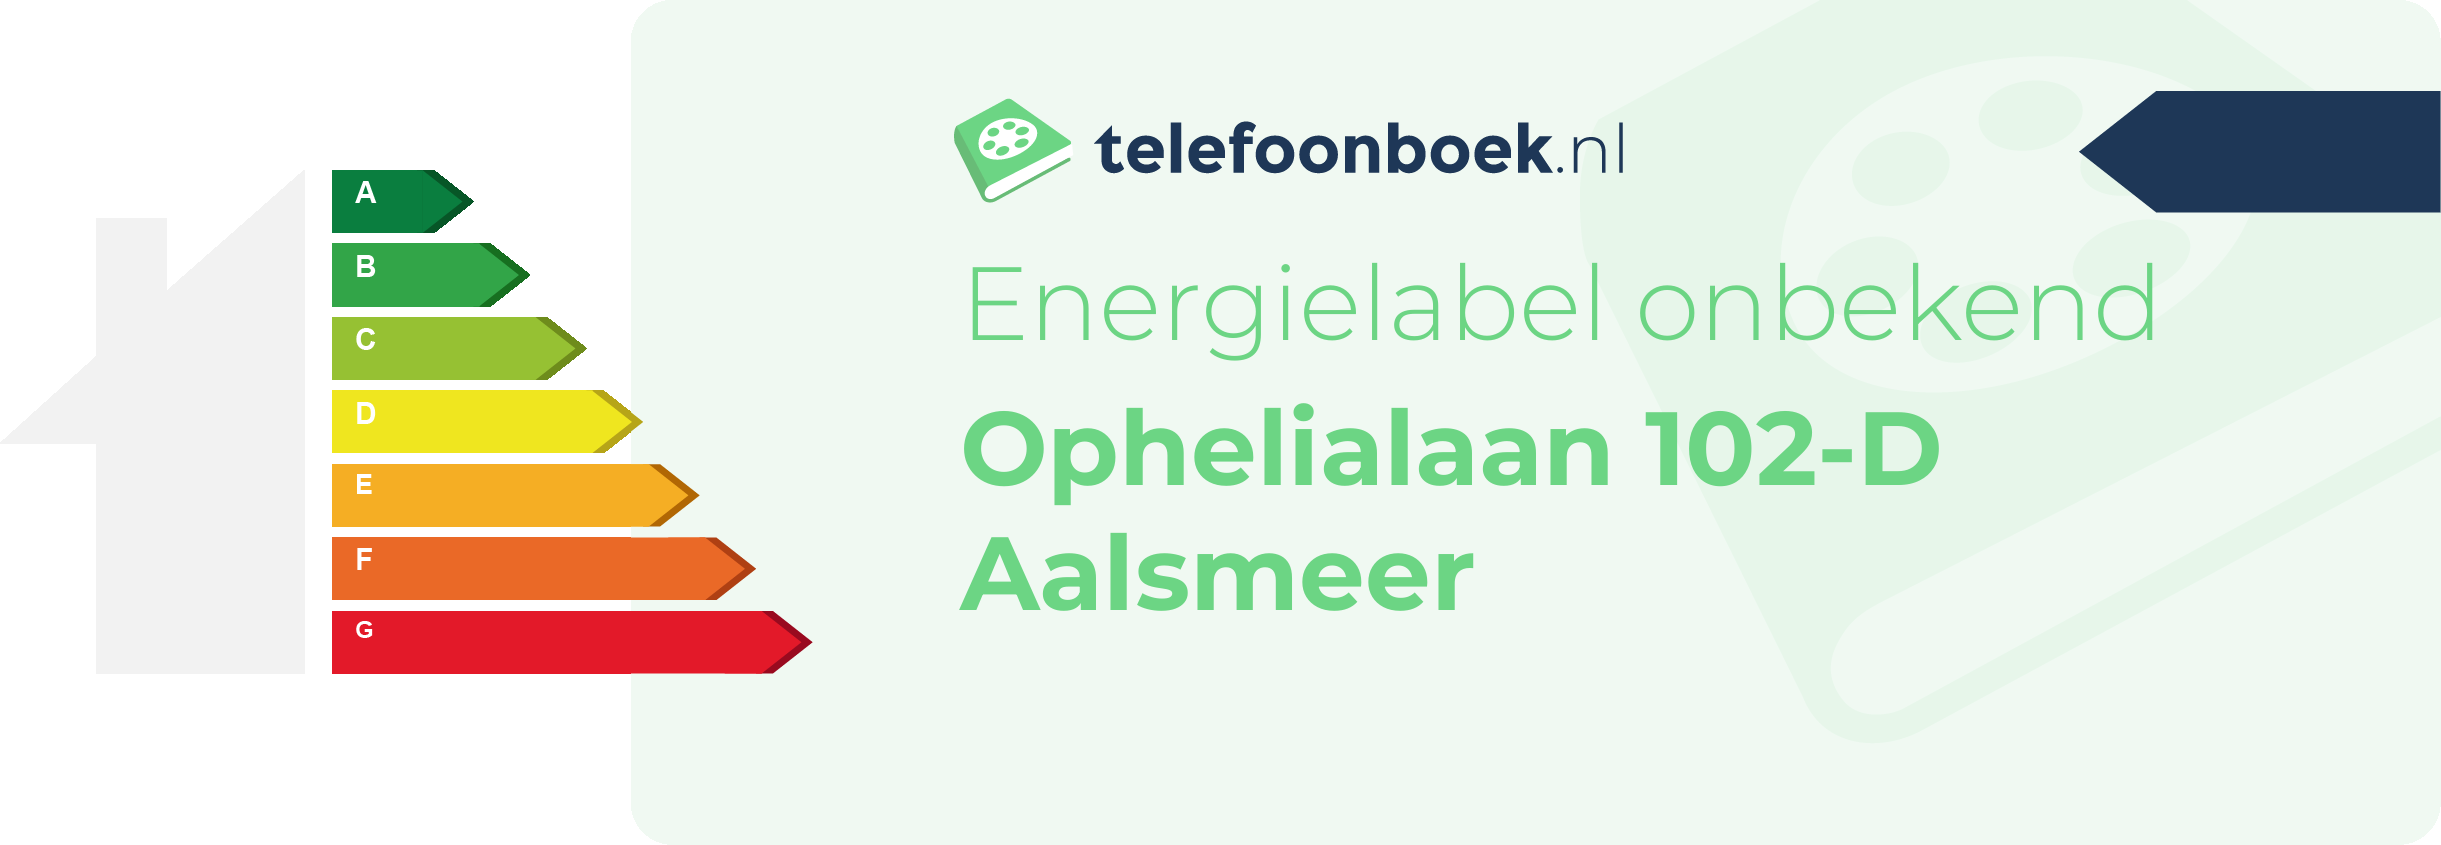 Energielabel Ophelialaan 102-D Aalsmeer